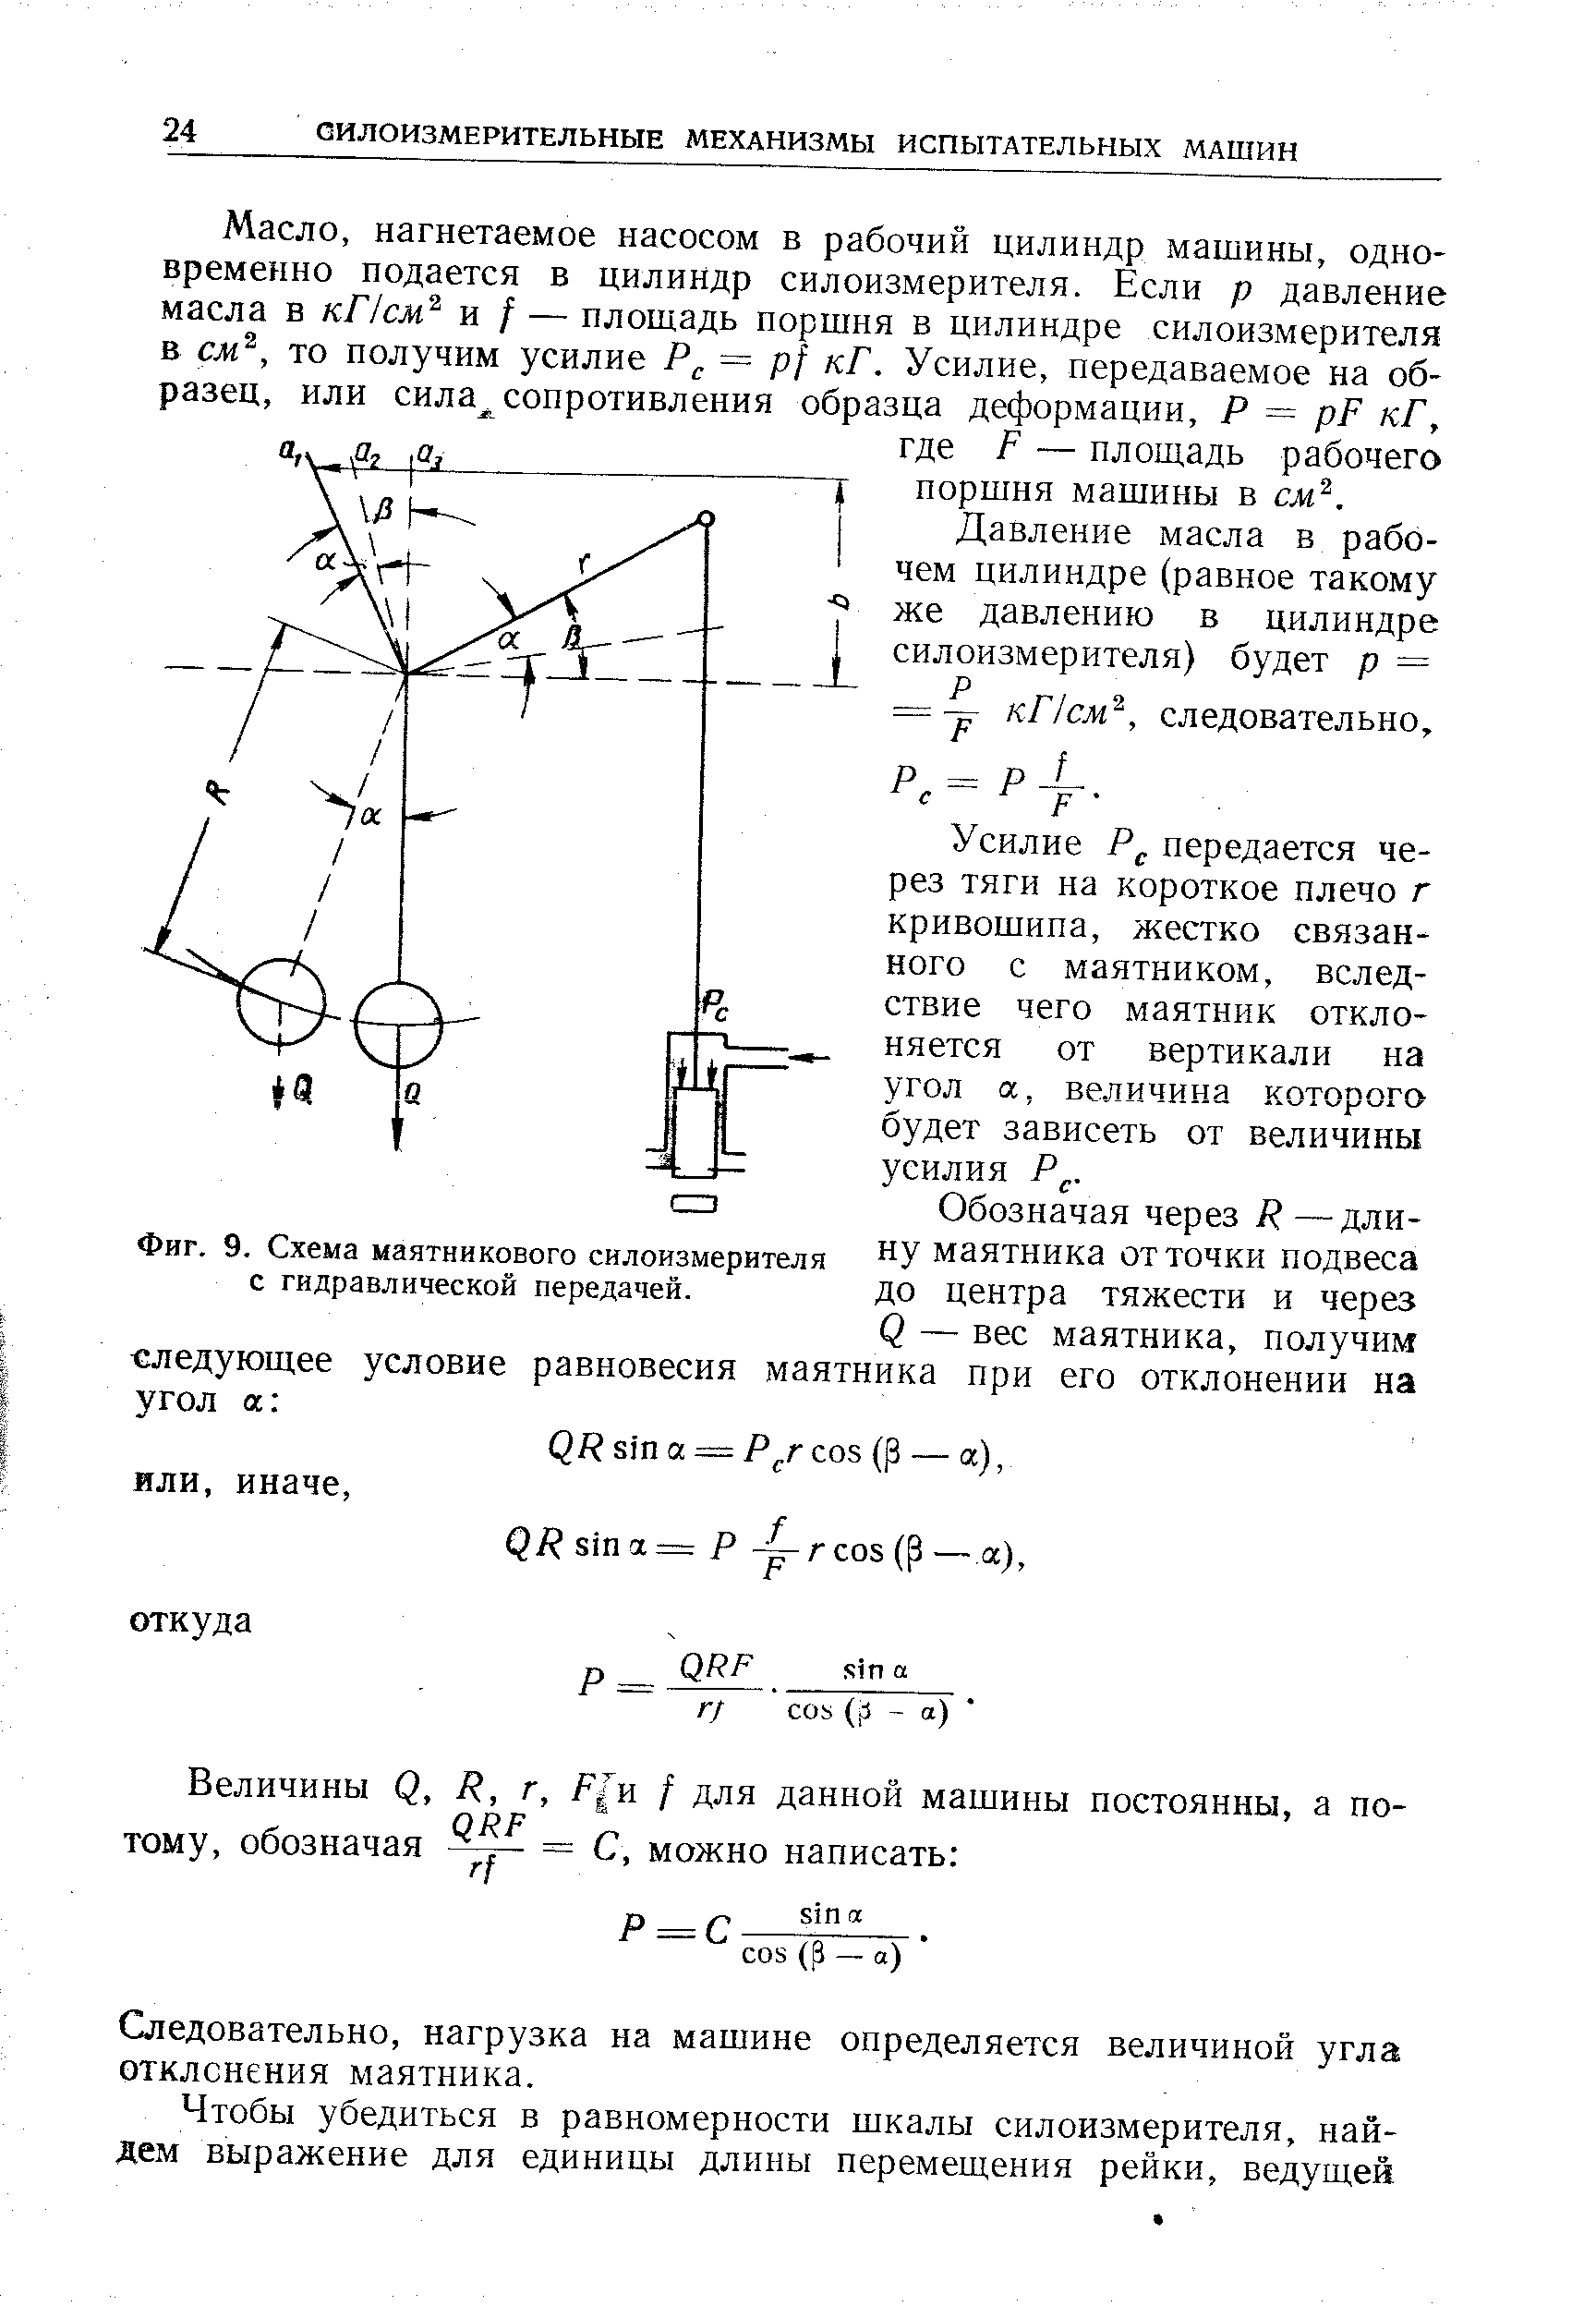 Фиг. 9. Схема маятникового силоизмерителя с гидравлической передачей.
